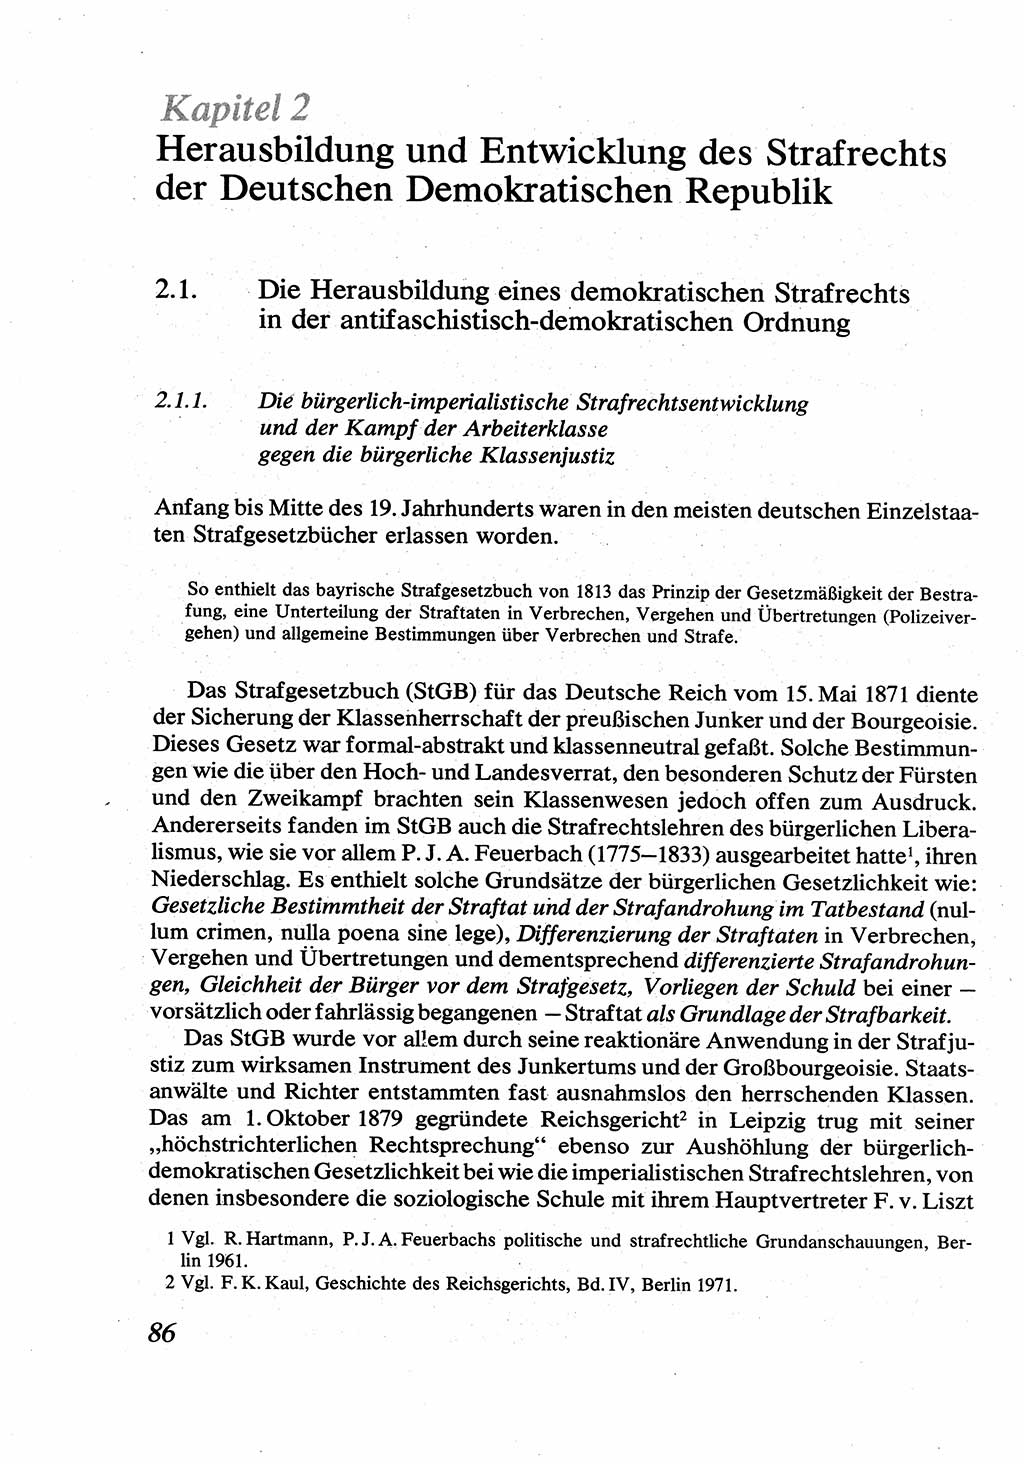 Strafrecht [Deutsche Demokratische Republik (DDR)], Allgemeiner Teil, Lehrbuch 1976, Seite 86 (Strafr. DDR AT Lb. 1976, S. 86)